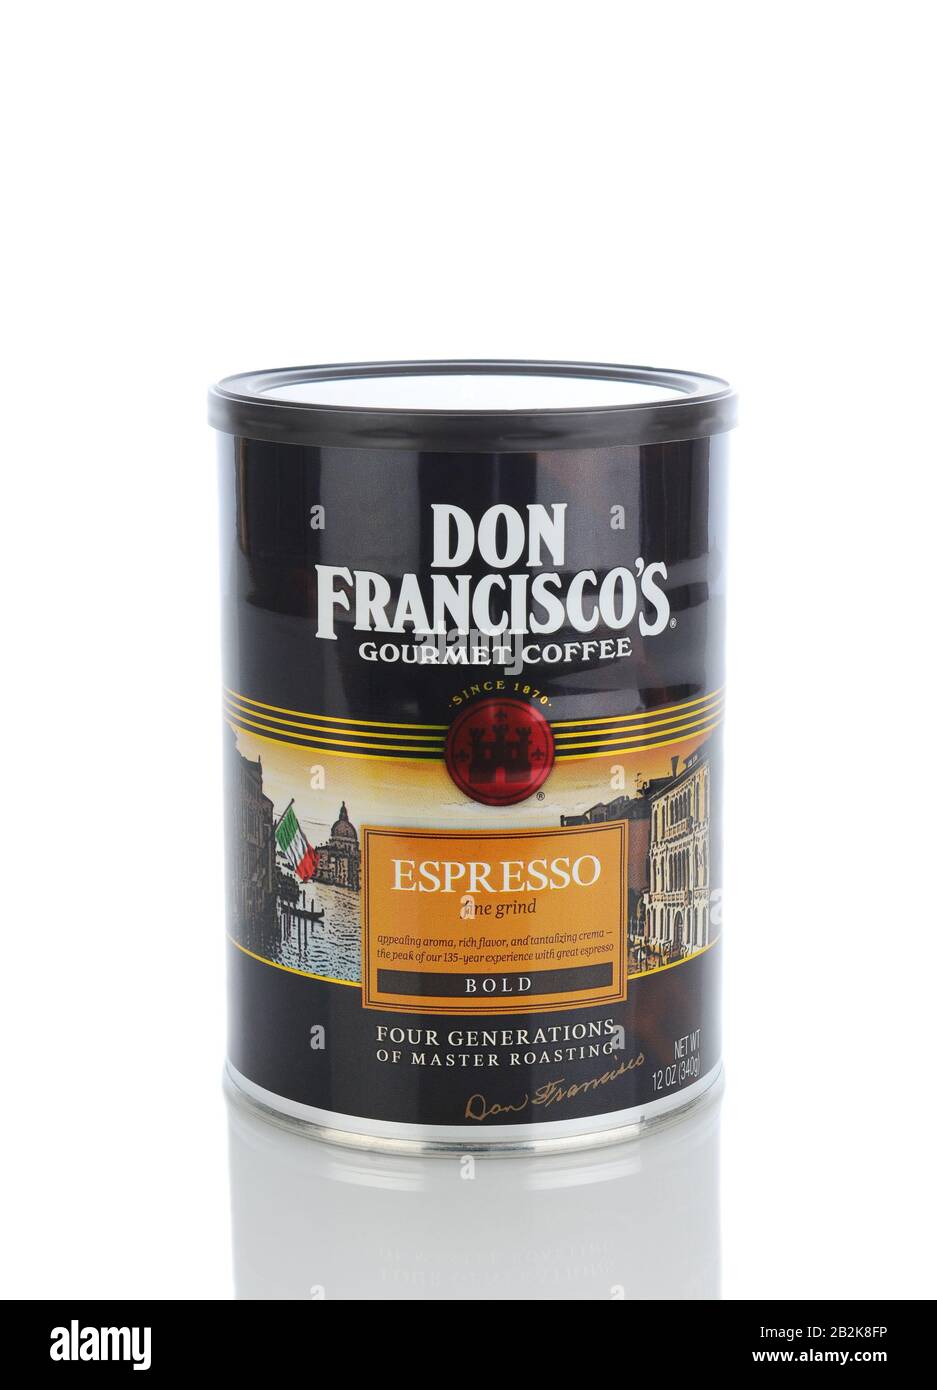 Irvine, CA - 11. Januar 2013: Eine 12-Dose Don Franciscos Gourmet Coffee. Don Franciscos wurde 1984 von der Familie Gaviña gegründet und gehört zu den Top 10 Co Stockfoto